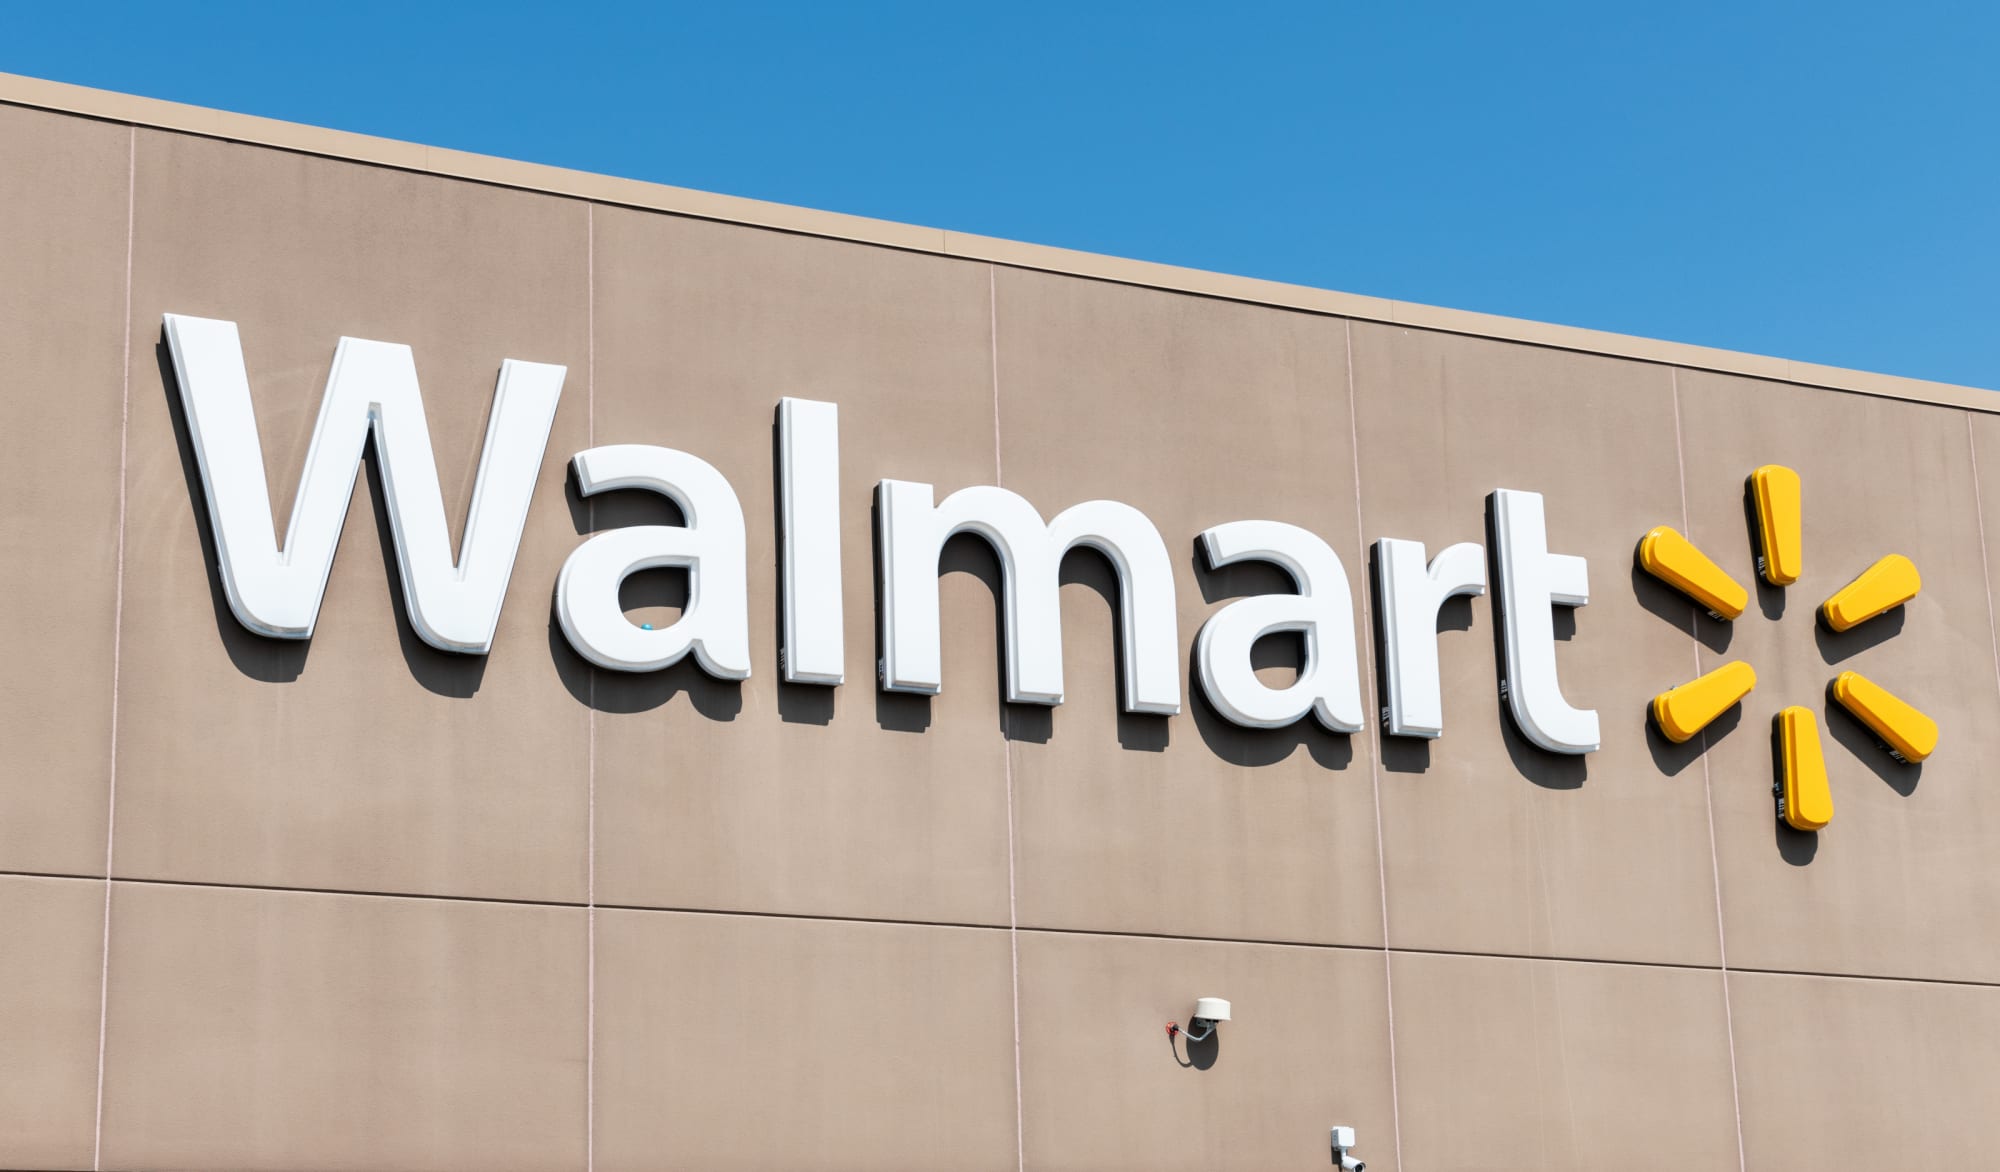 Is Walmart open on Christmas Eve 2018?